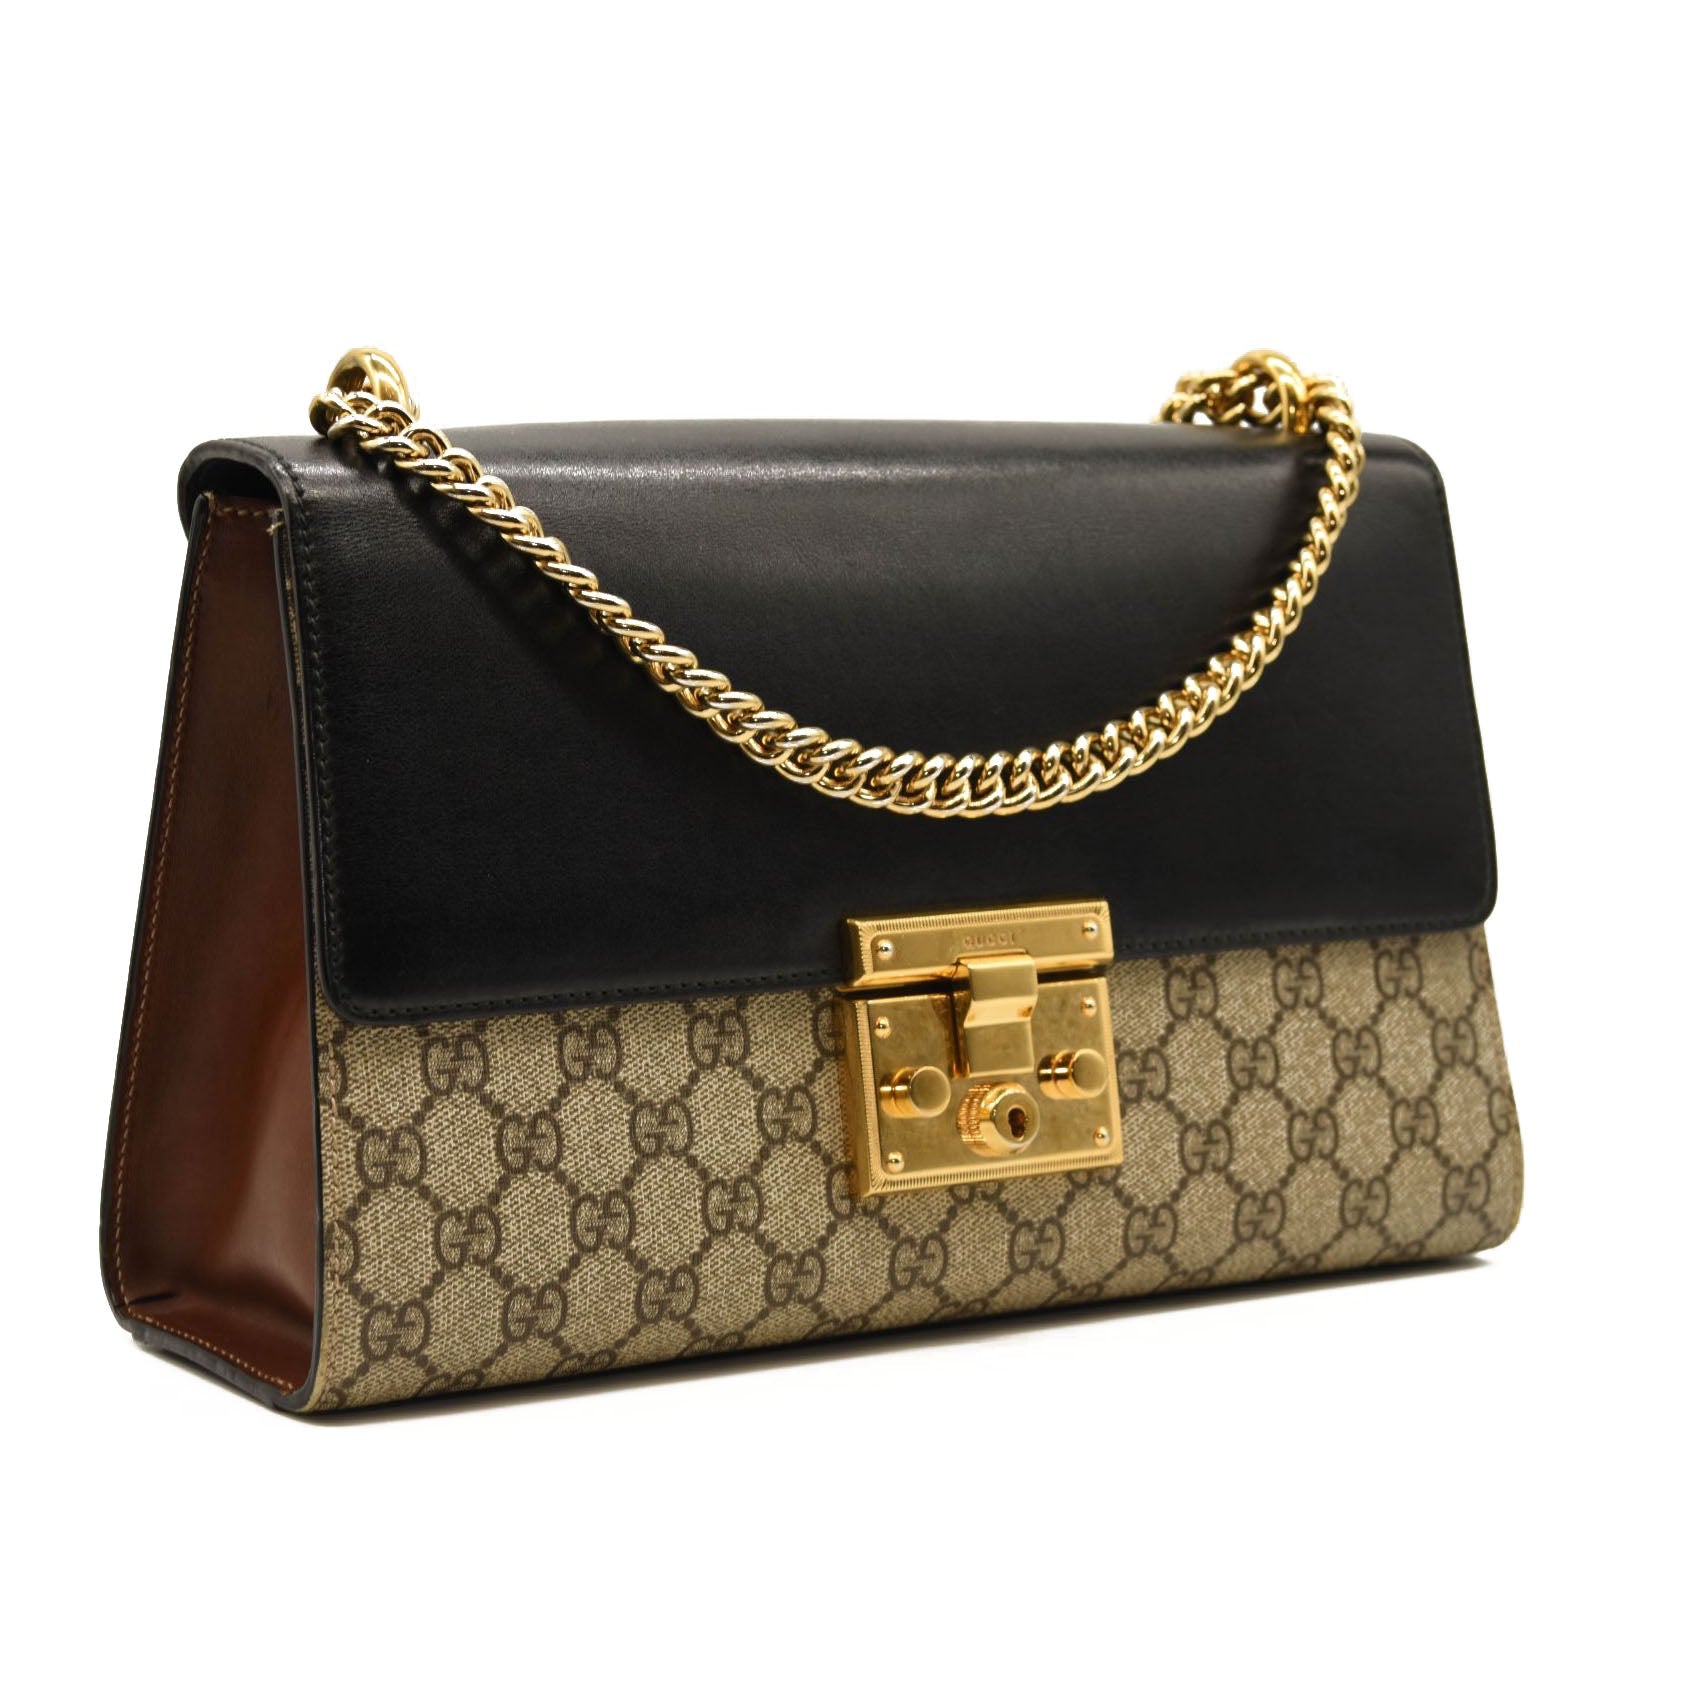 Gucci Padlock GG Supreme Top Handle Bag in Black